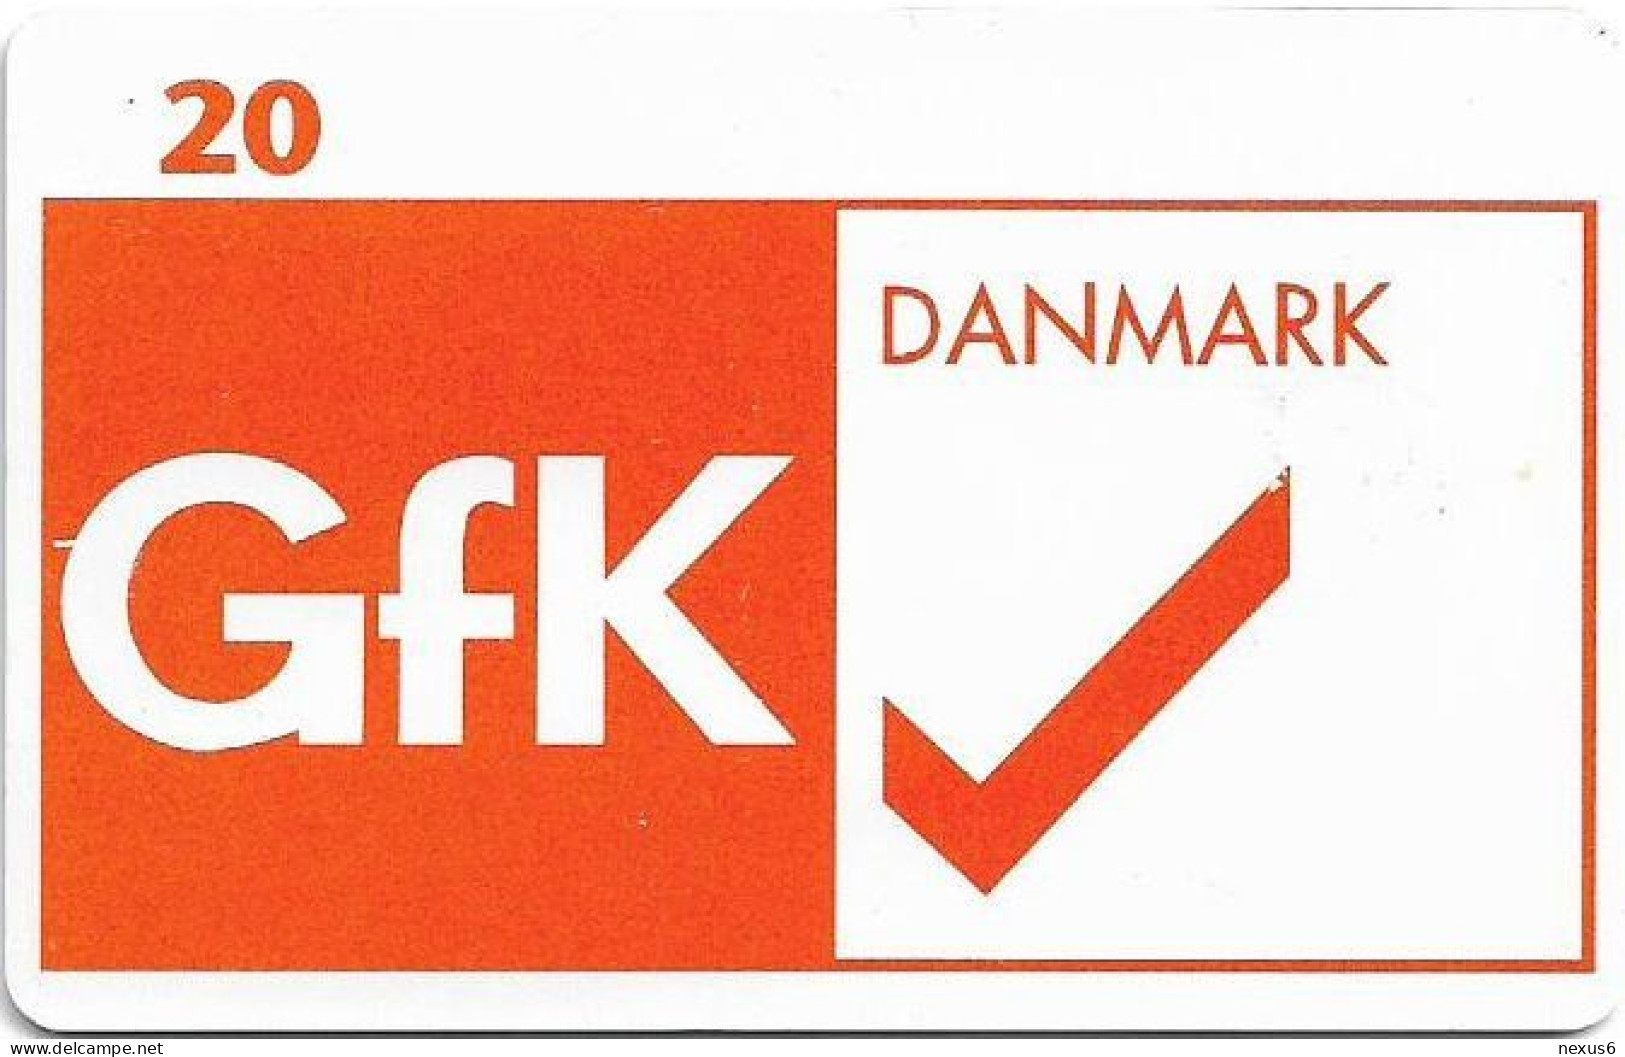 Denmark - Tele Danmark (chip) - GFK Danmark AS - TDP213C - 01.1999, 2.100ex, 20kr, Used - Dänemark